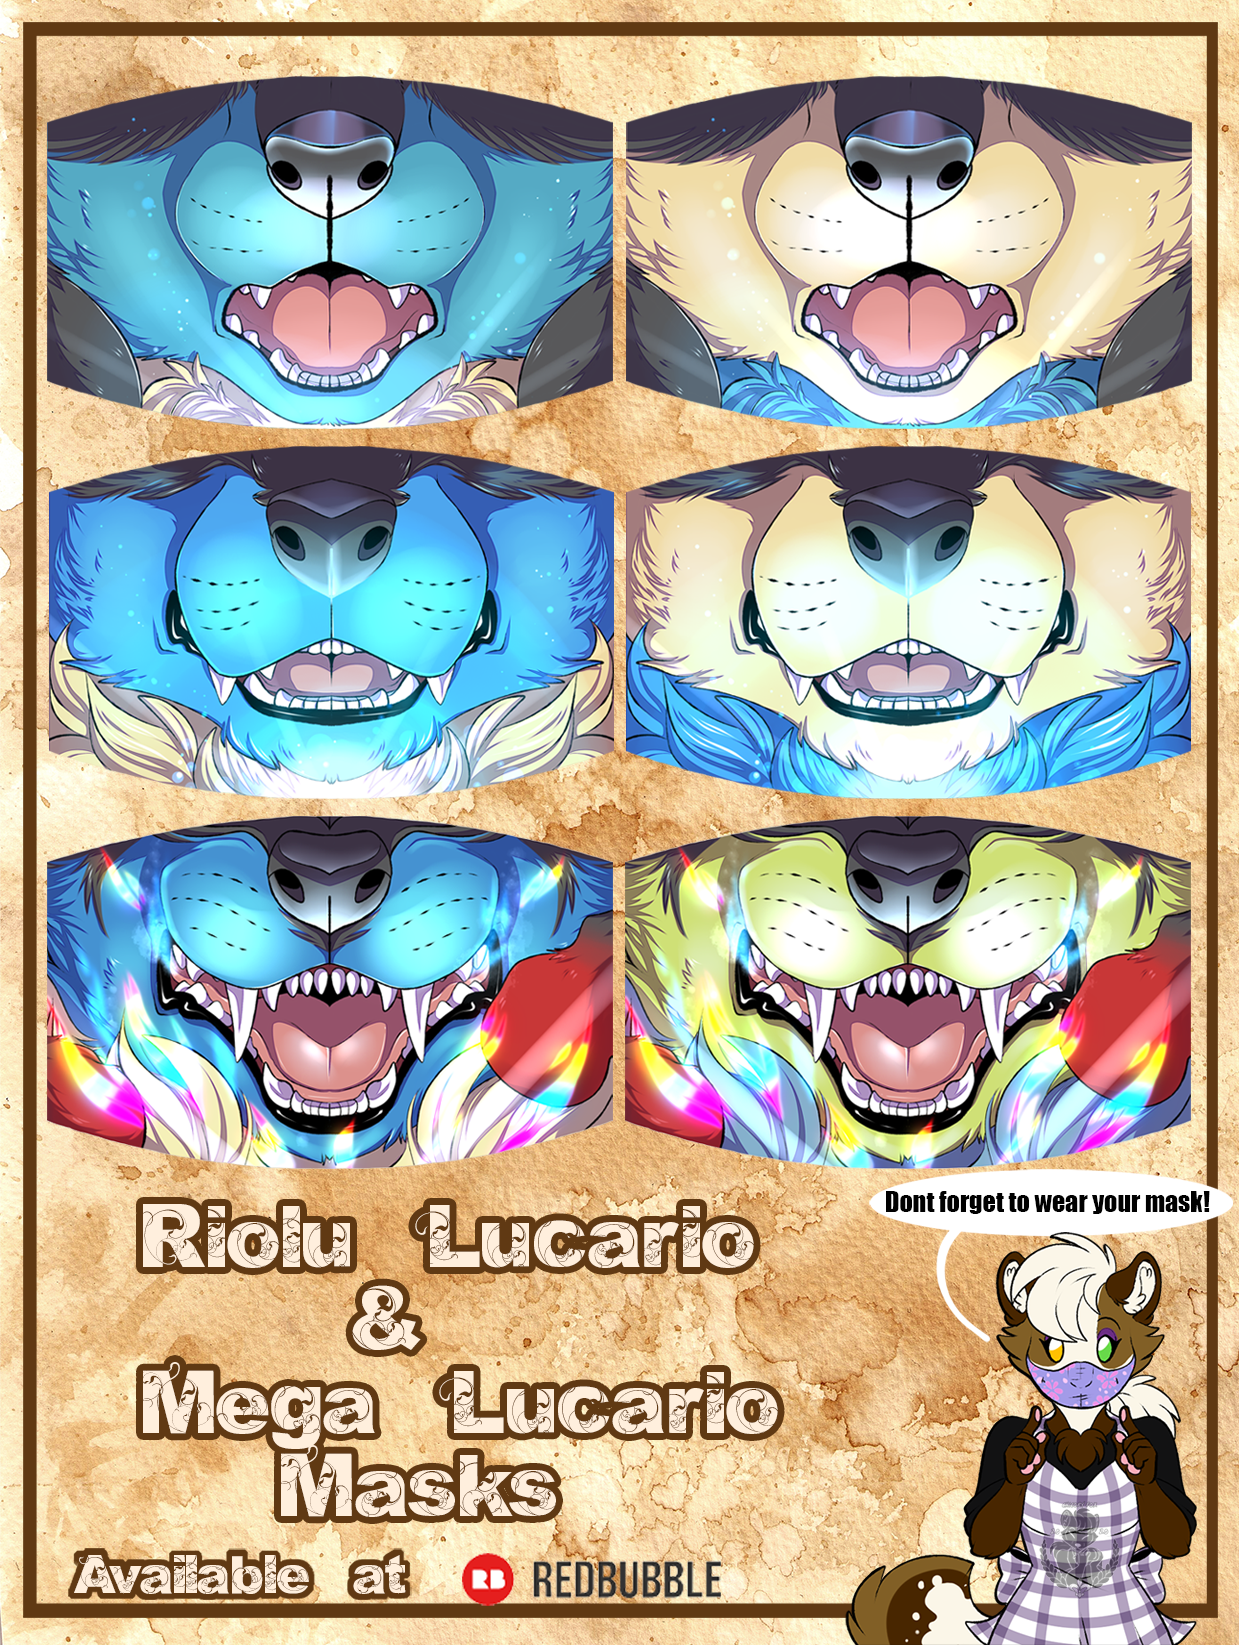 Podložka pod myš Pokémon Mega Lucario Riolu Anime Potisk pro hráče za 138  Kč - Allegro